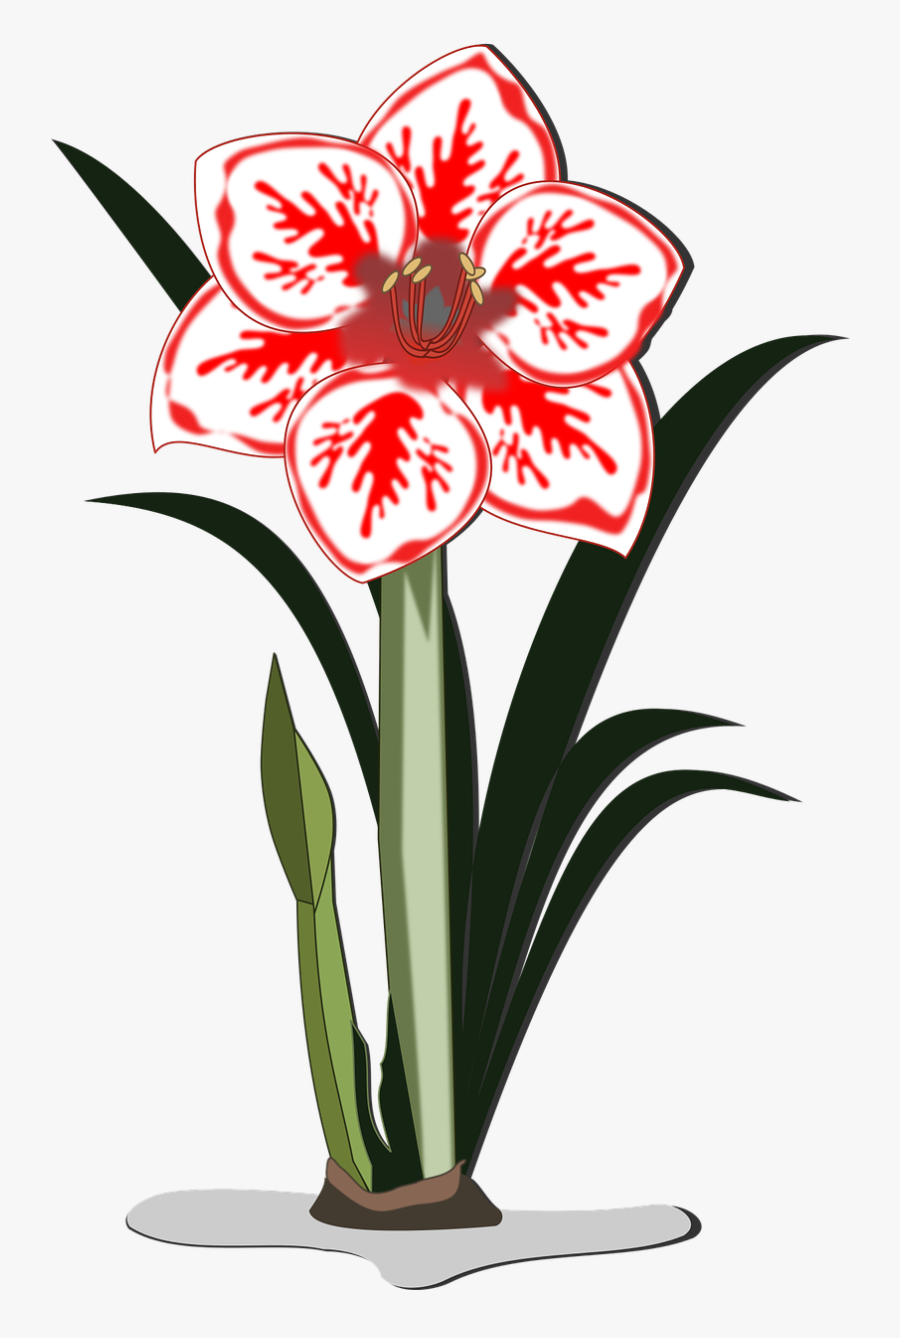 Amaryllis Clip Art Flor Free Picture - Amaryllis Flower Clip Art, Transparent Clipart